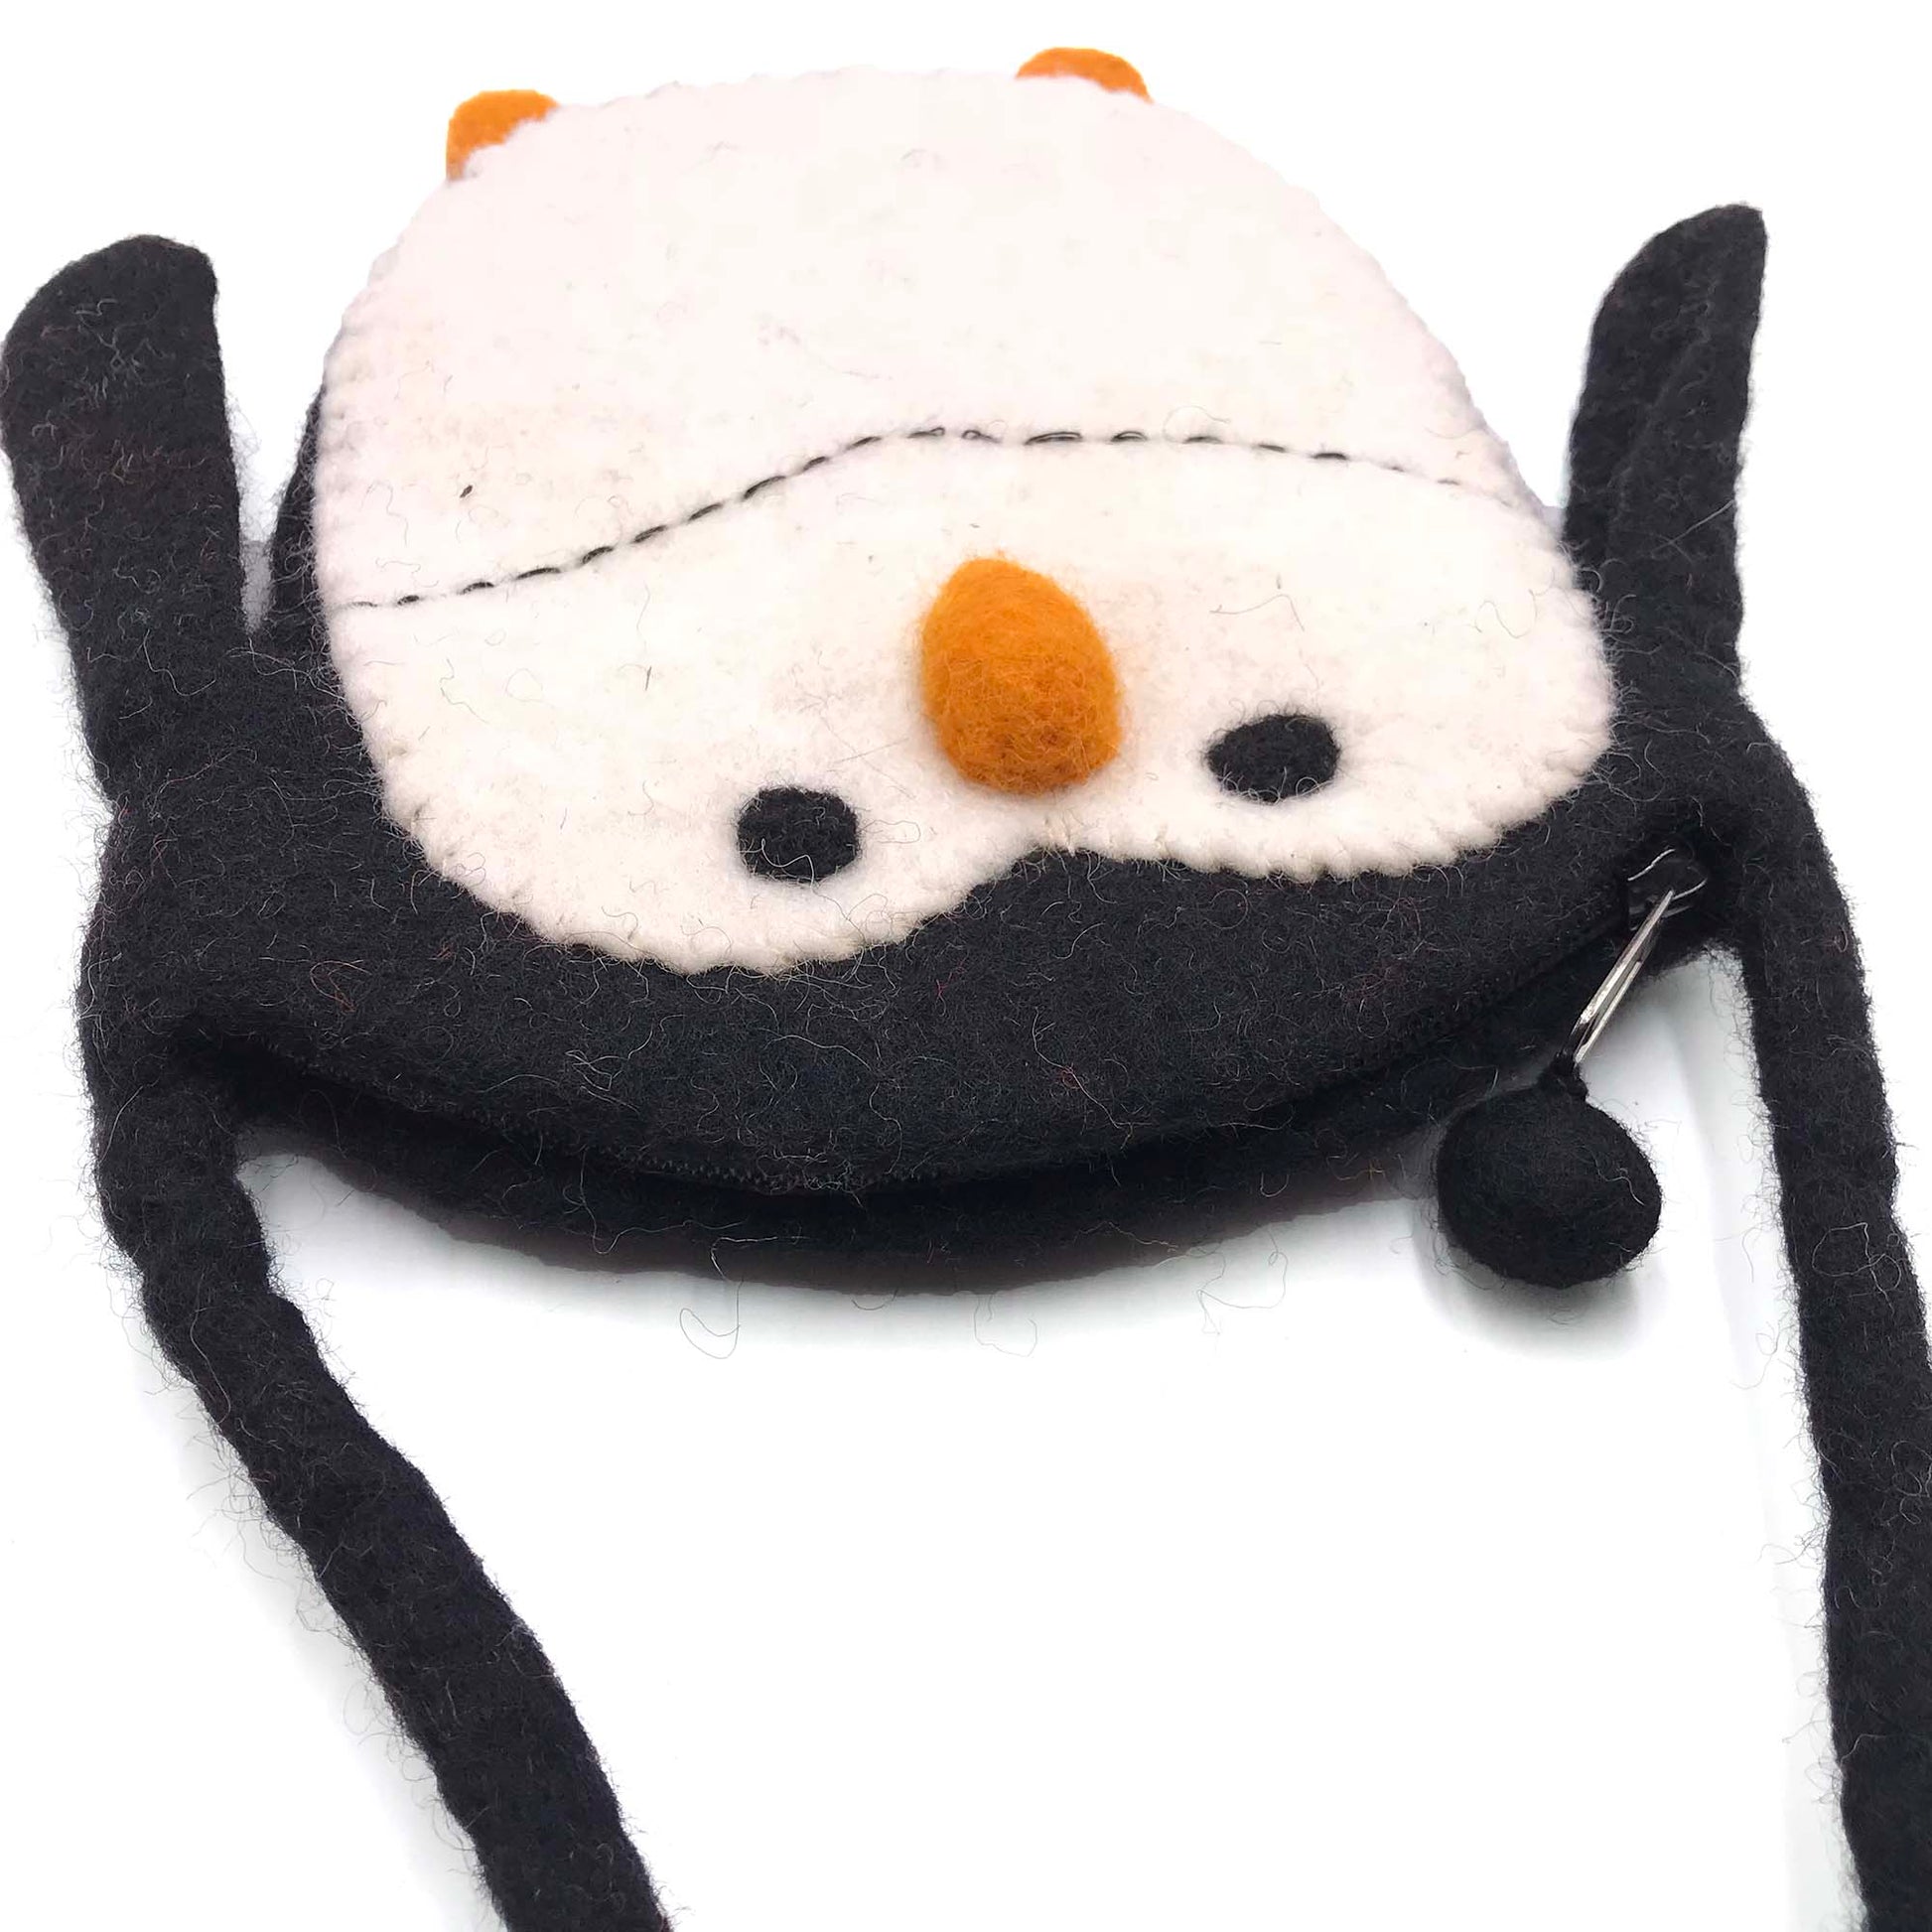 Penguin Sling Bag made from felt